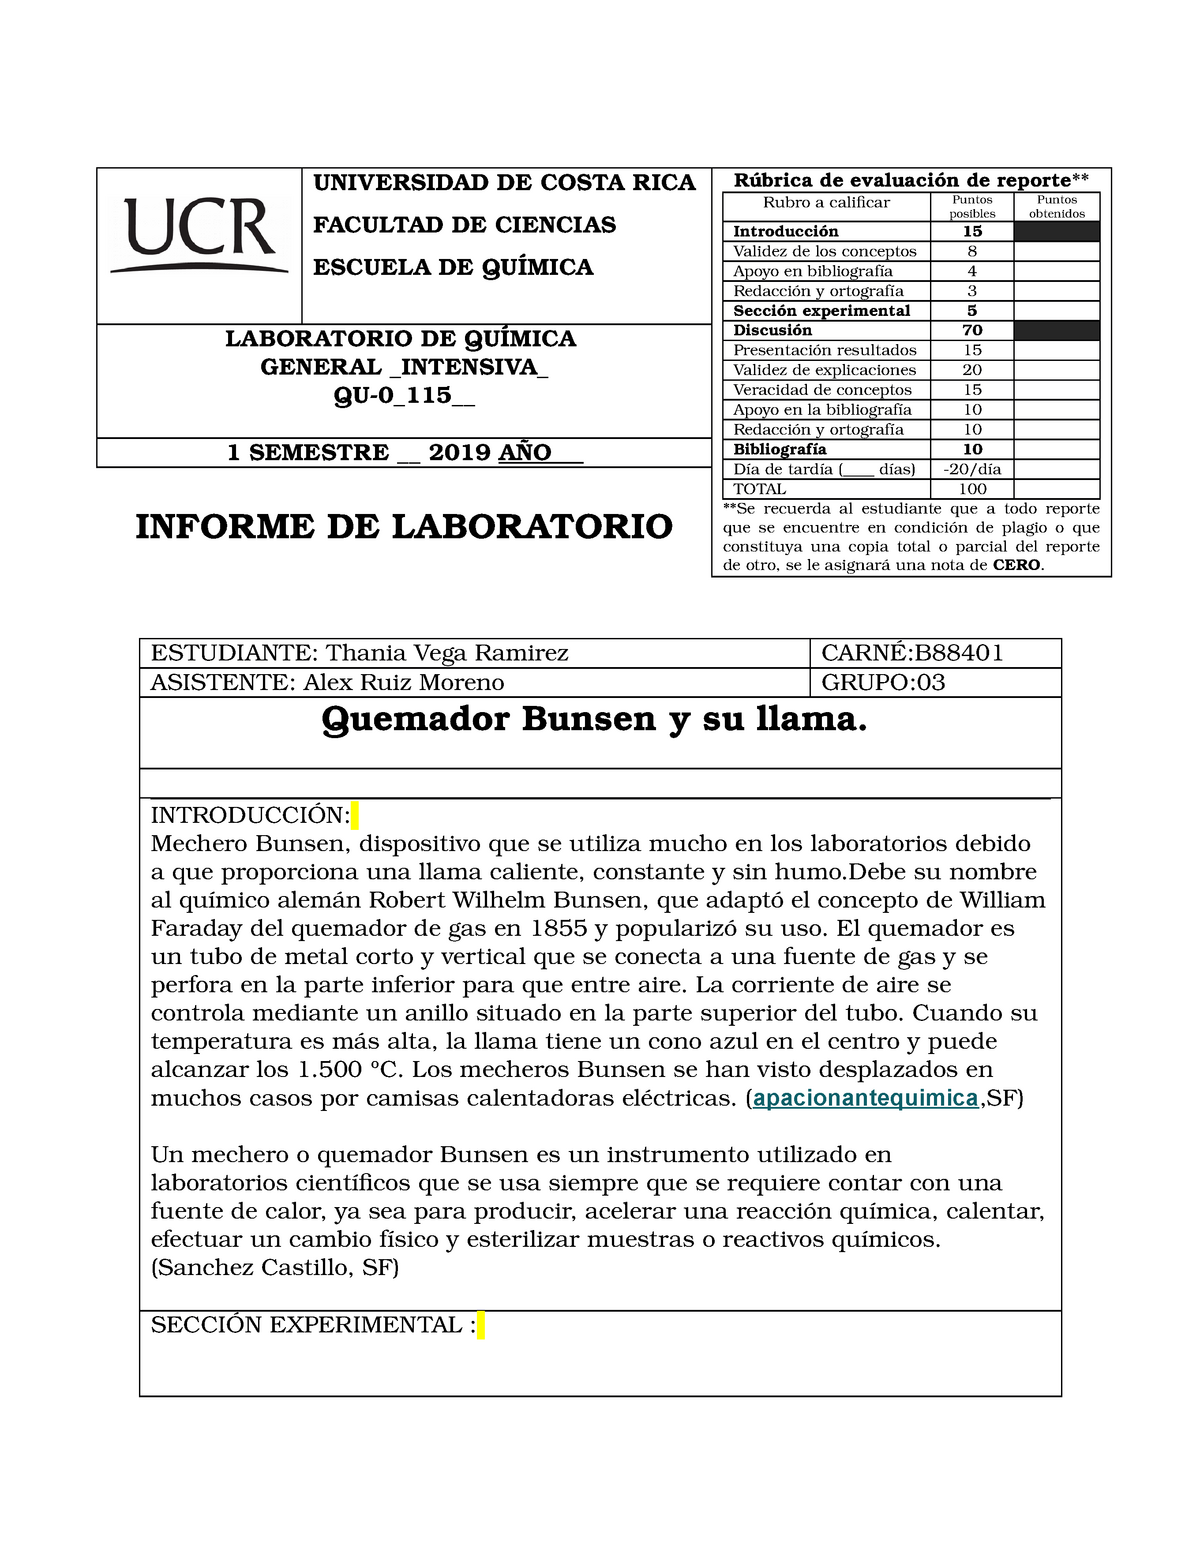 Bunsen Y Su Llama Universidad De Costa Rica Facultad De Ciencias Escuela De Qu Studocu